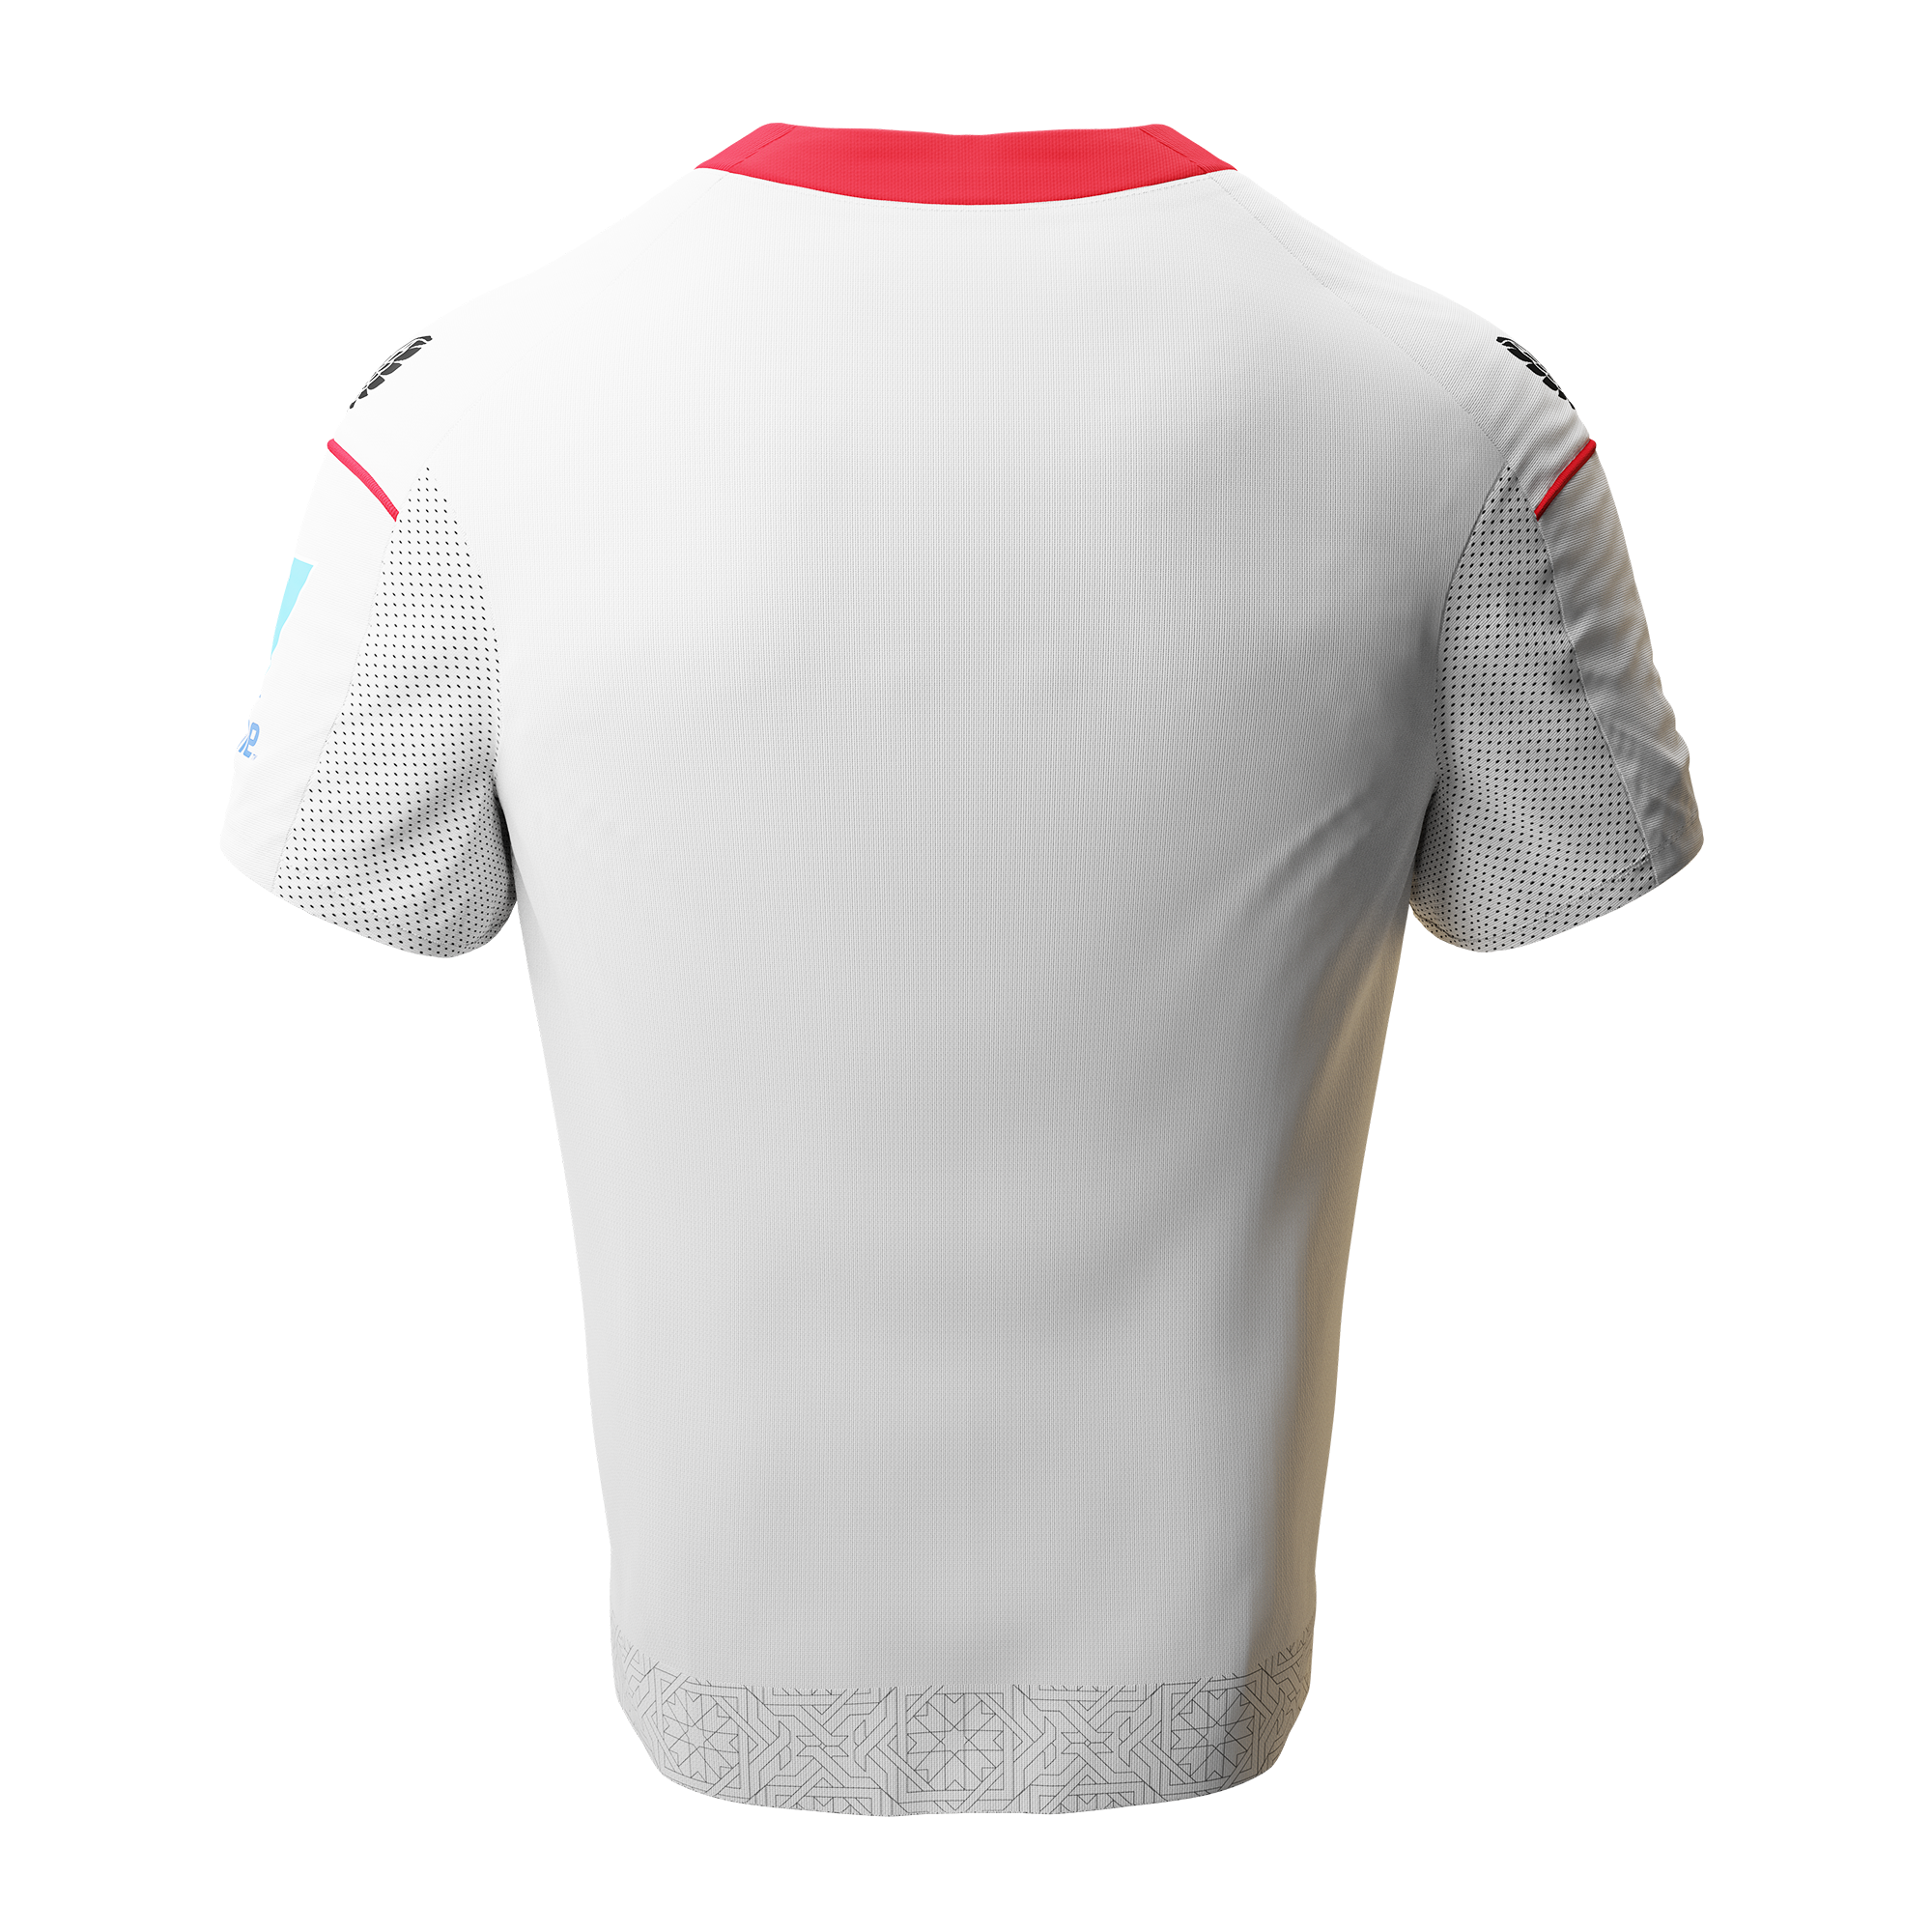 Camisetas del Sevilla 2022/2023: nuevas equipaciones de la marca